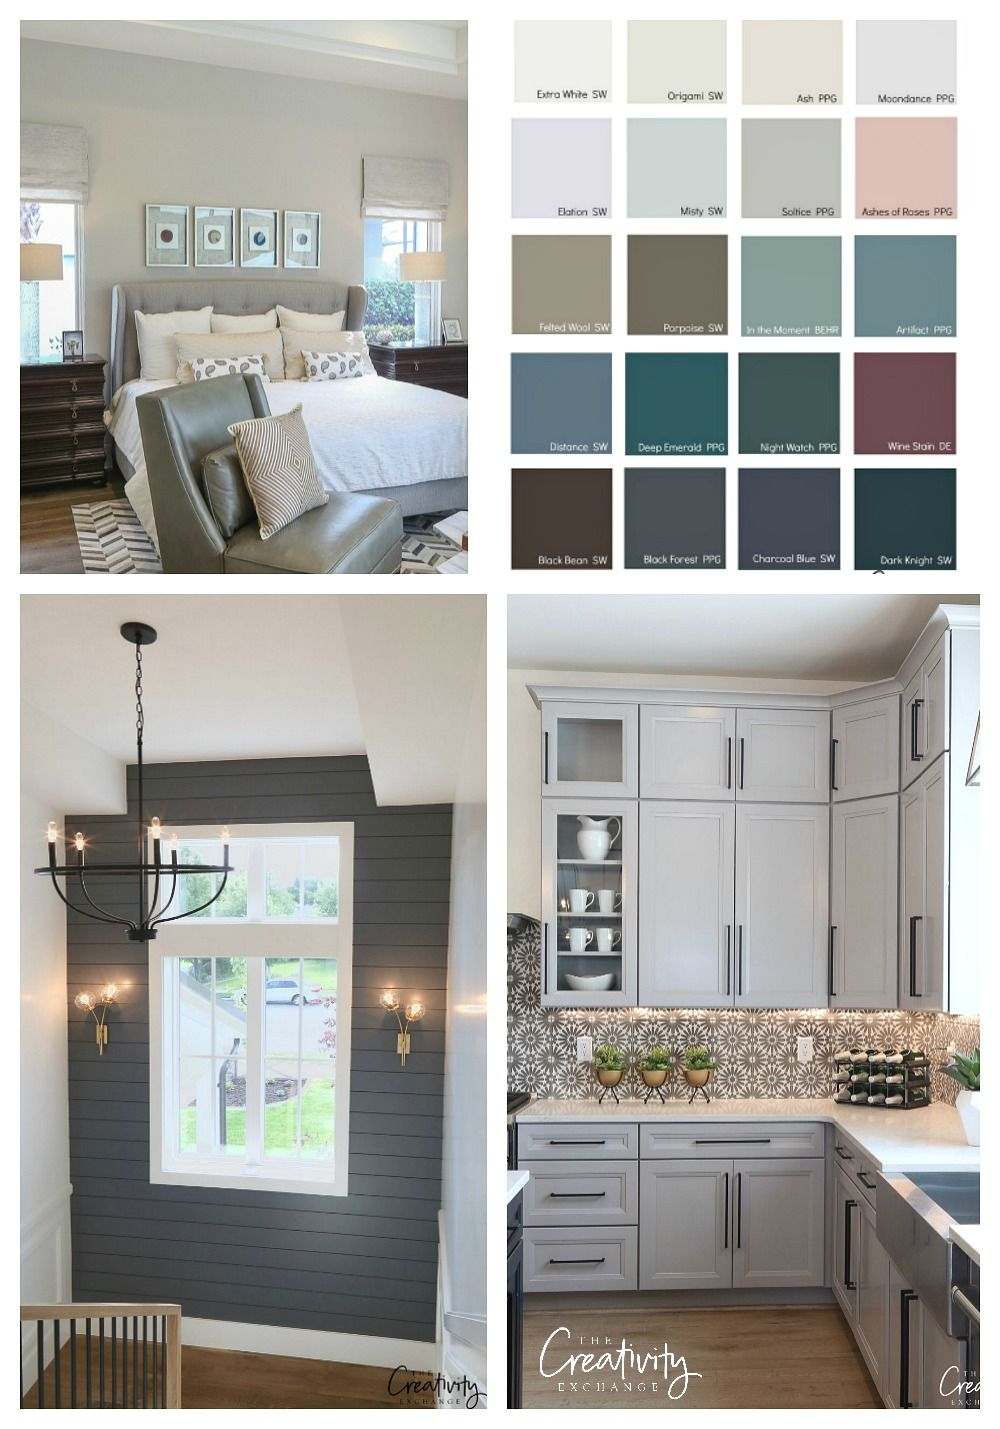 2019 Home Design Trends Bedroom Paint Colors Paint Colors regarding sizing 1000 X 1429